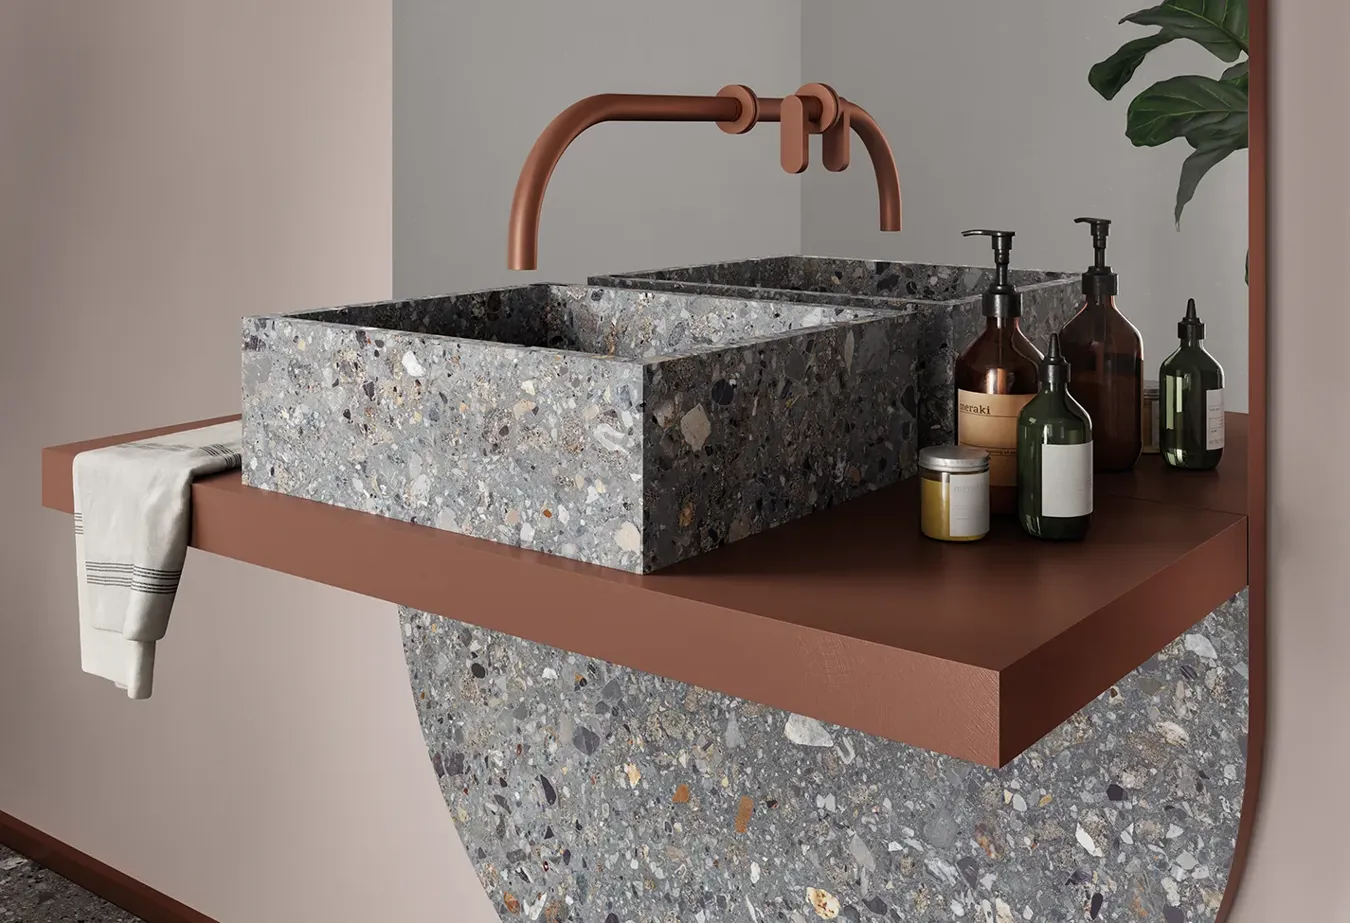 Elegante lavabo in piastrelle Dolmix Dark effetto pietra, con rubinetto rame e accessori raffinati.